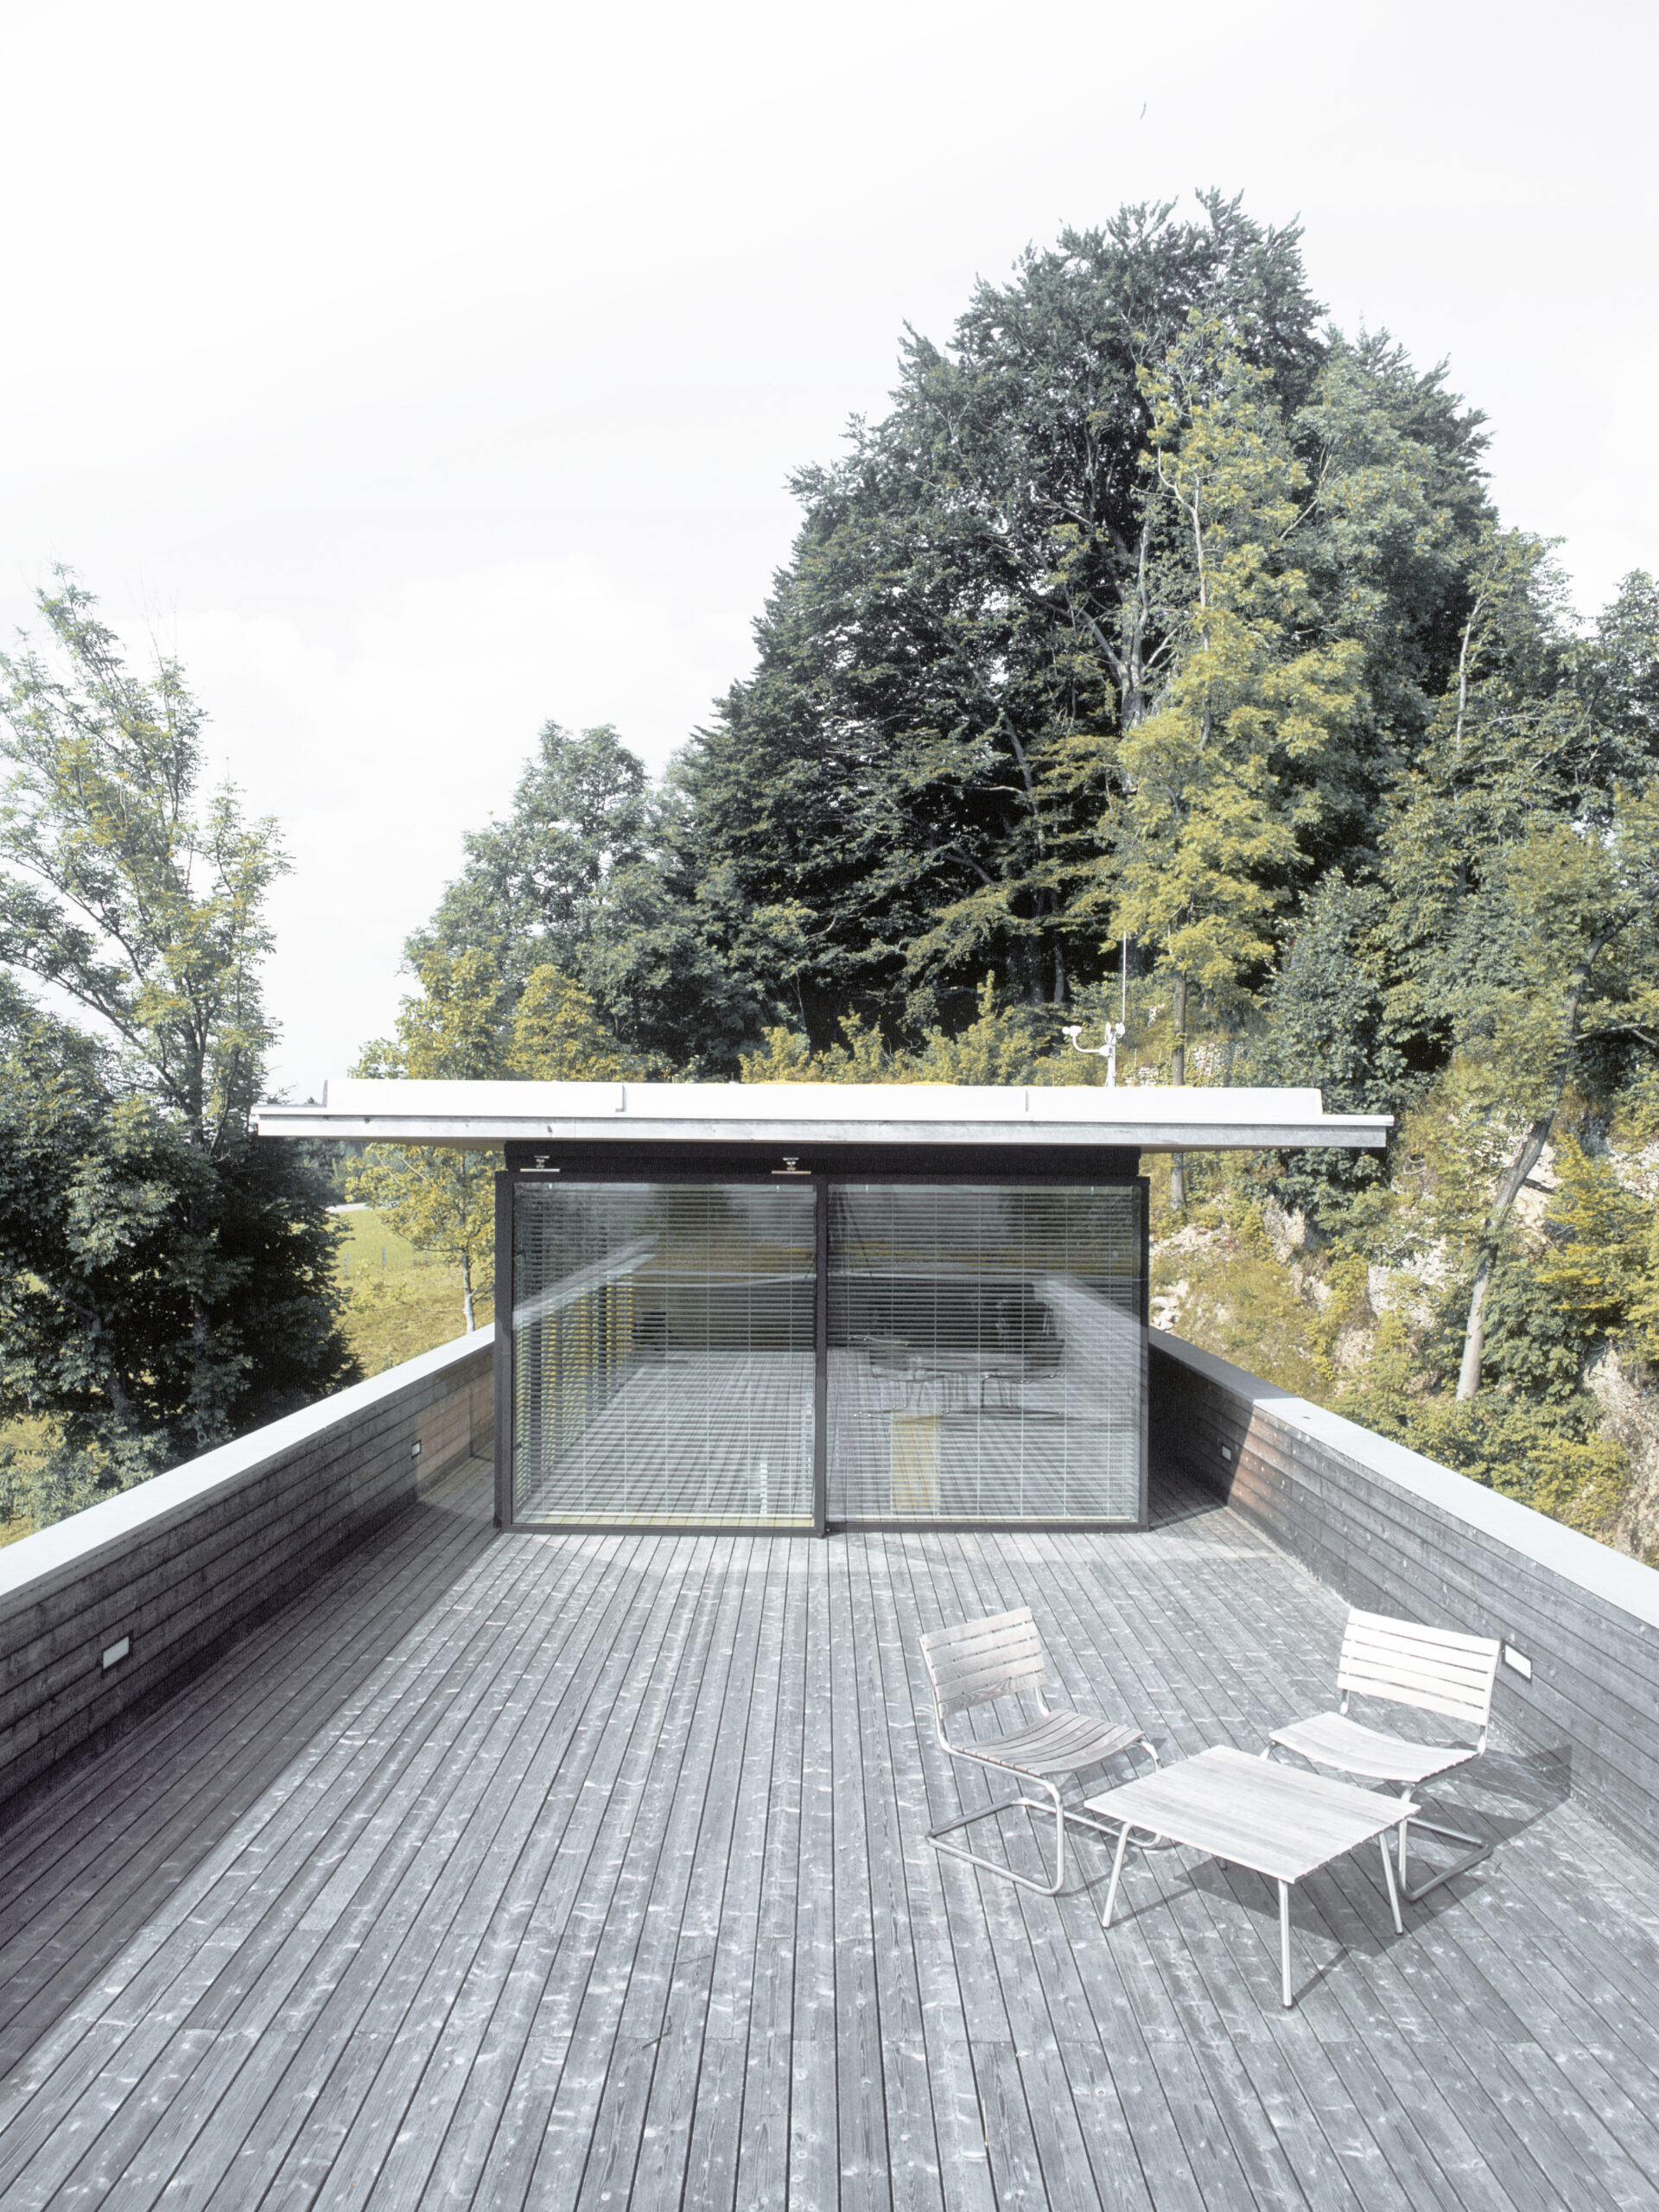 Michael-Becker-Architects-Architekten-Haus-h-03